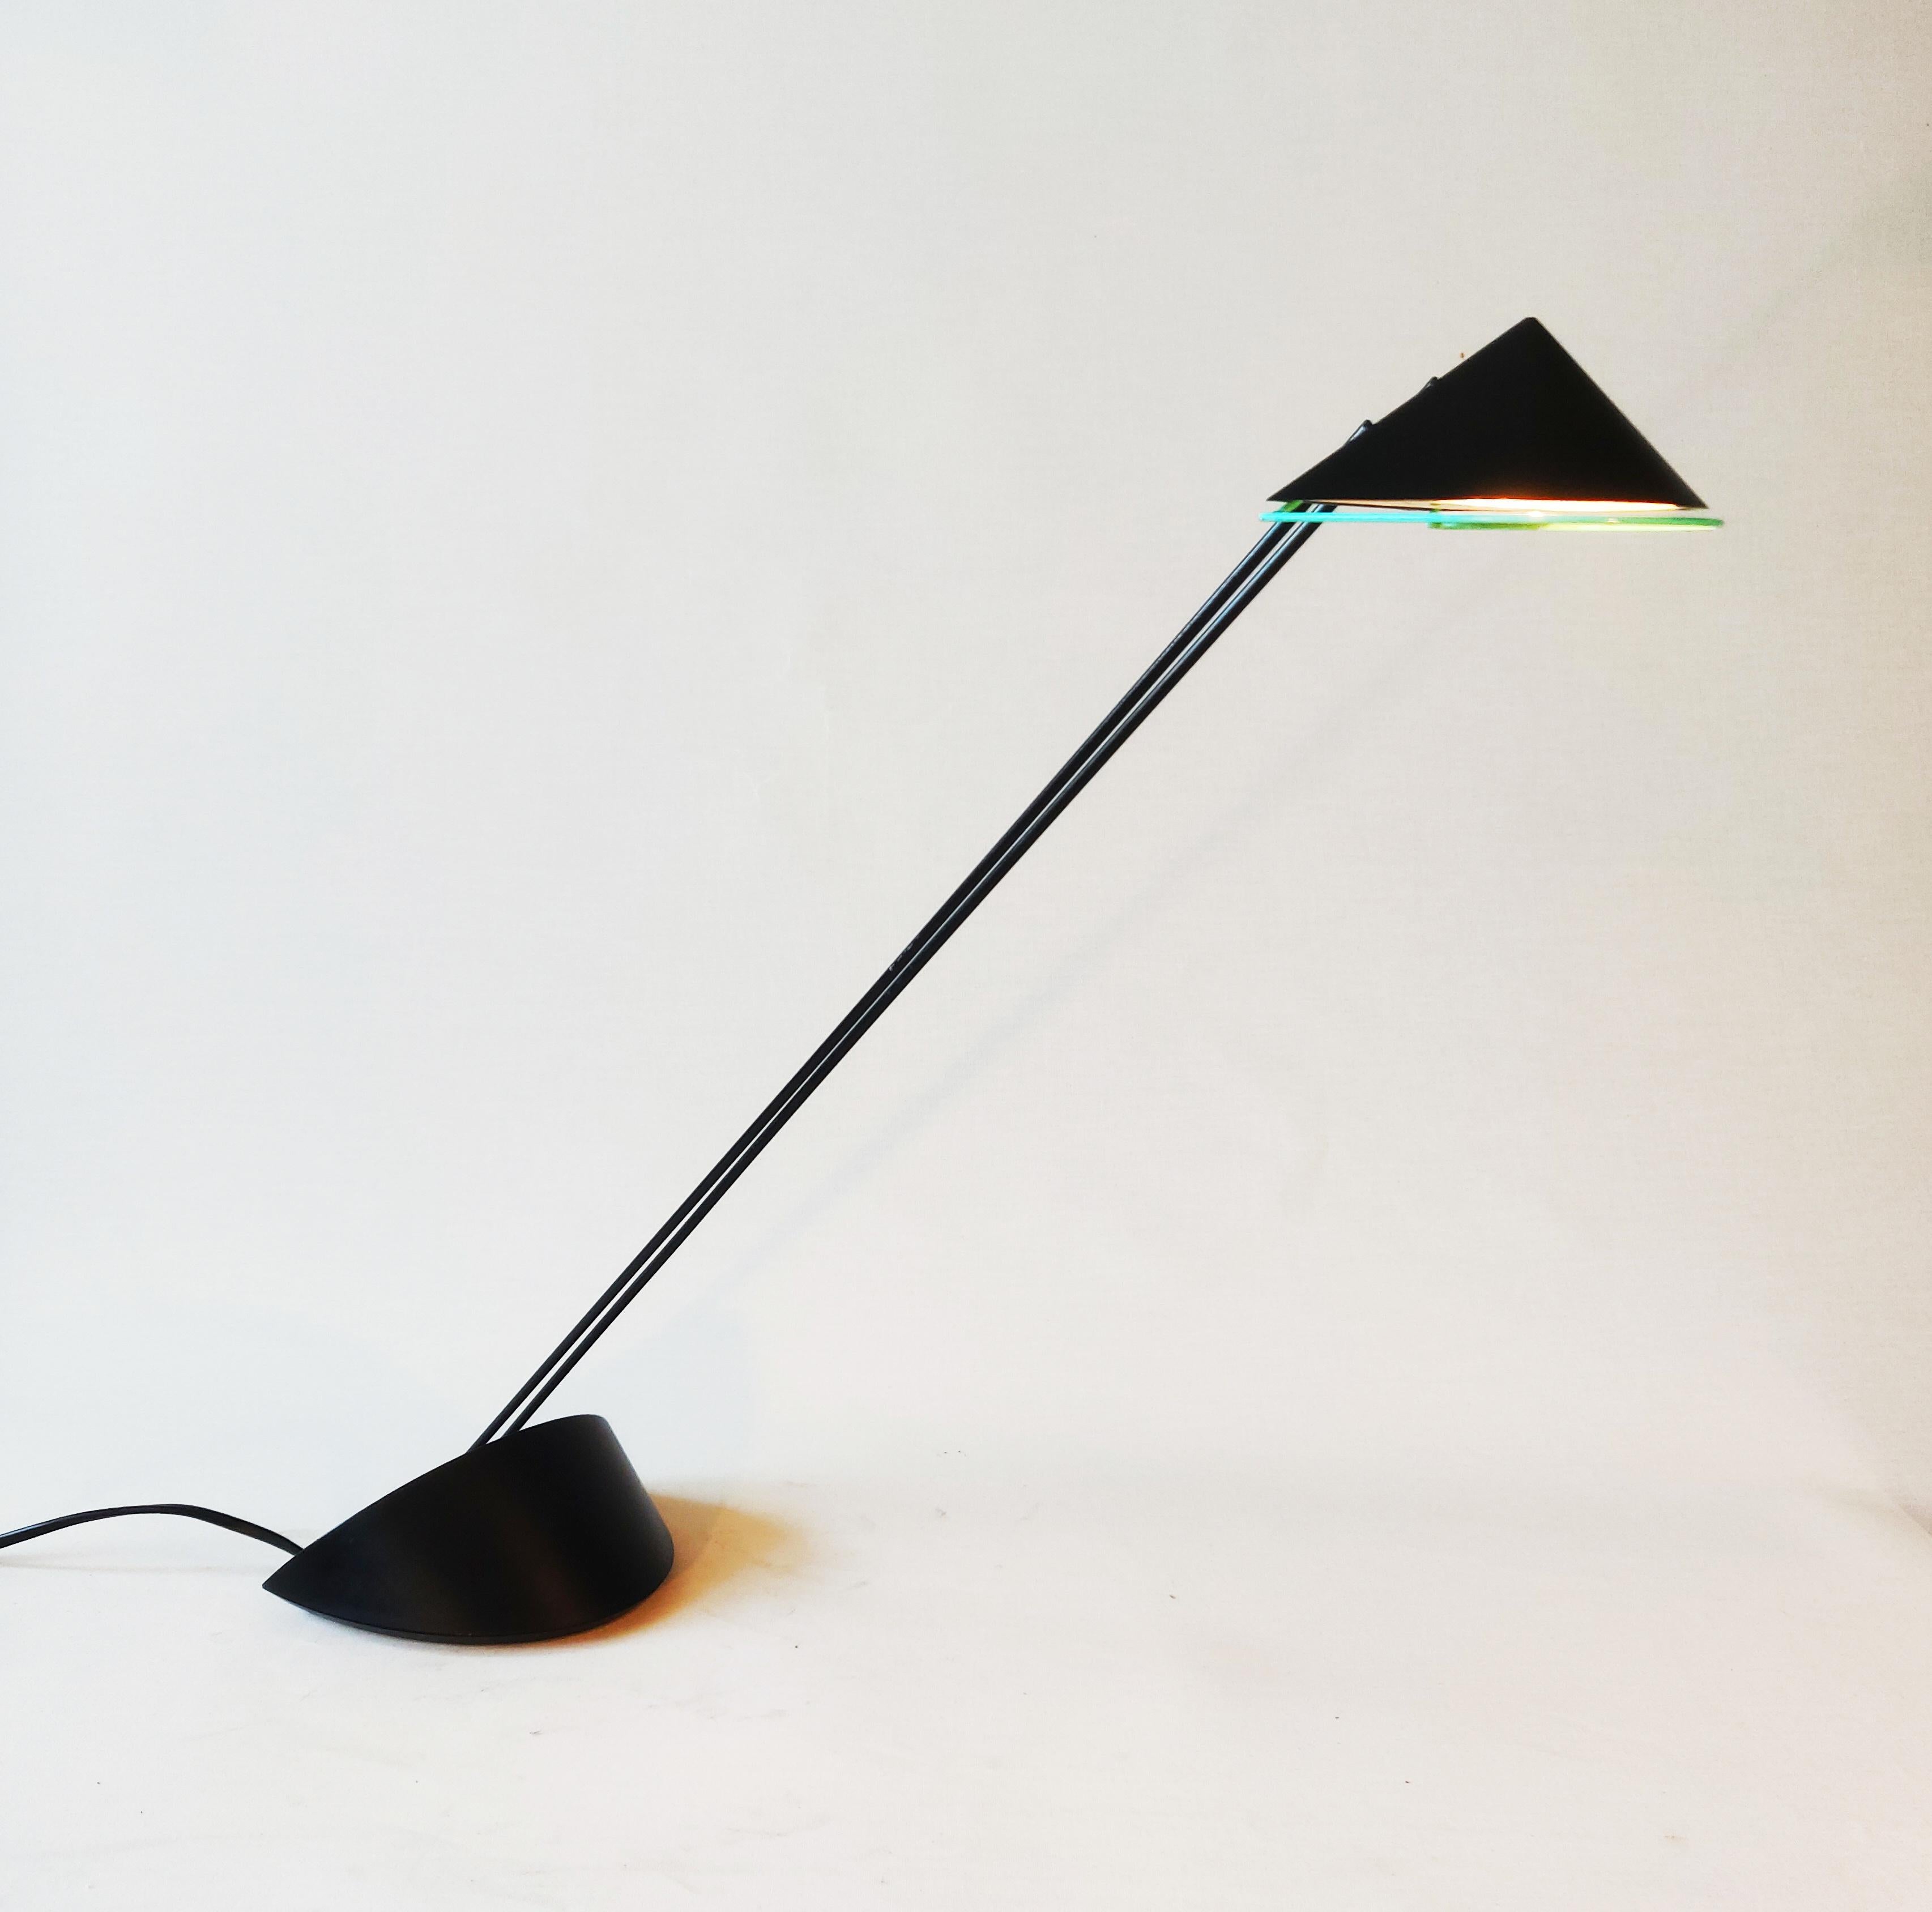 Dies ist eine Priola-Designlampe aus den 80er Jahren. Die Leuchte wurde von dem niederländischen Designer Ad van Berlo entworfen und von Indoor Amsterdam produziert. Die Leuchte hat einen pastellgrünen Rand unter dem Schirm und auch der Ein- und